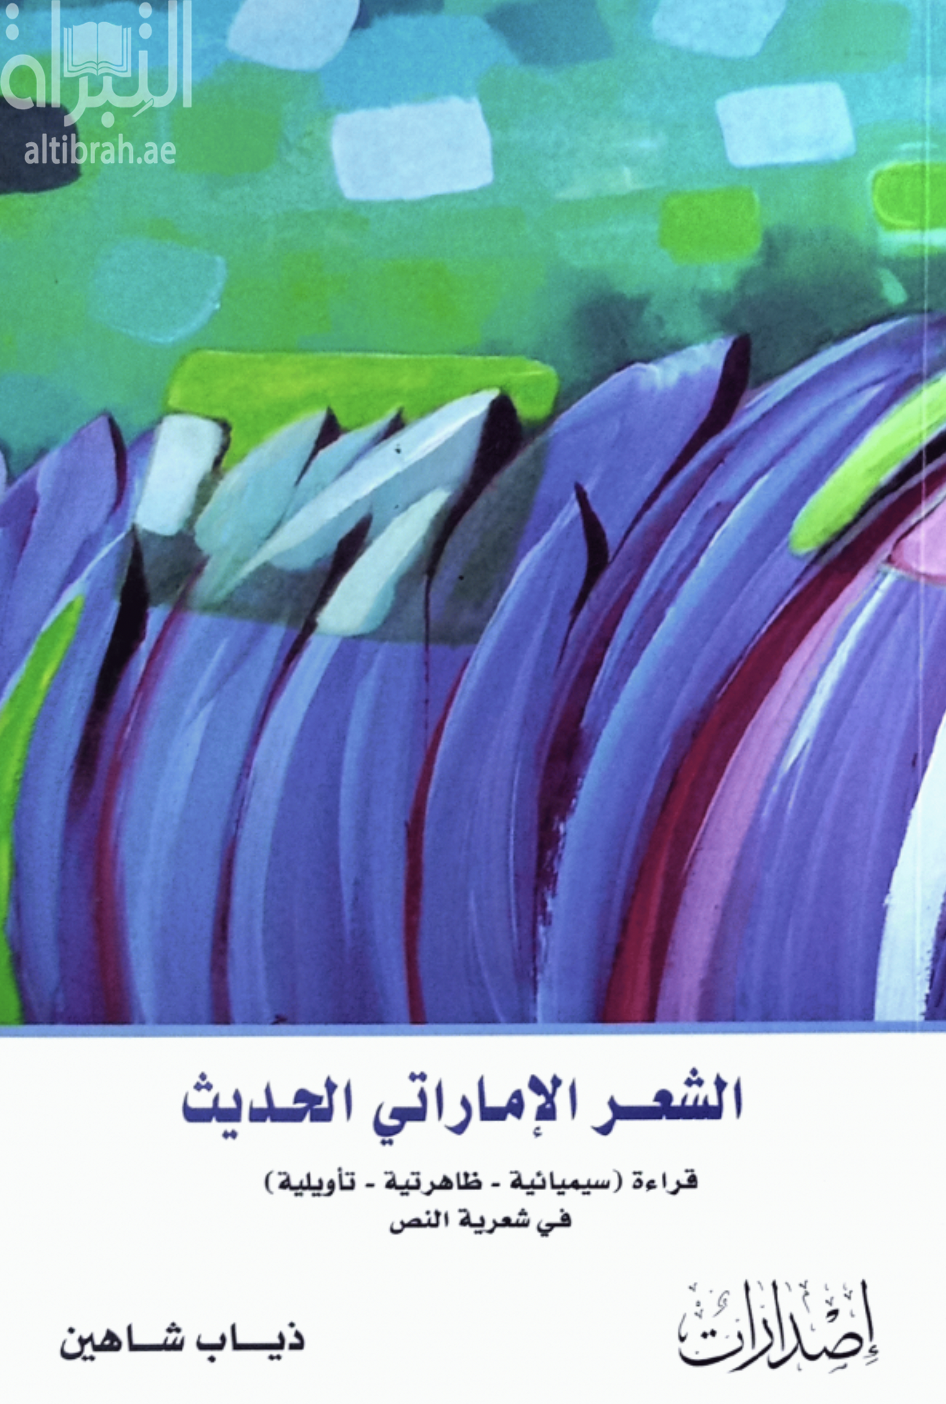 الشعر الإماراتي الحديث : قراءة سيميائية ظاهراتية تأويلية في شعرية النص